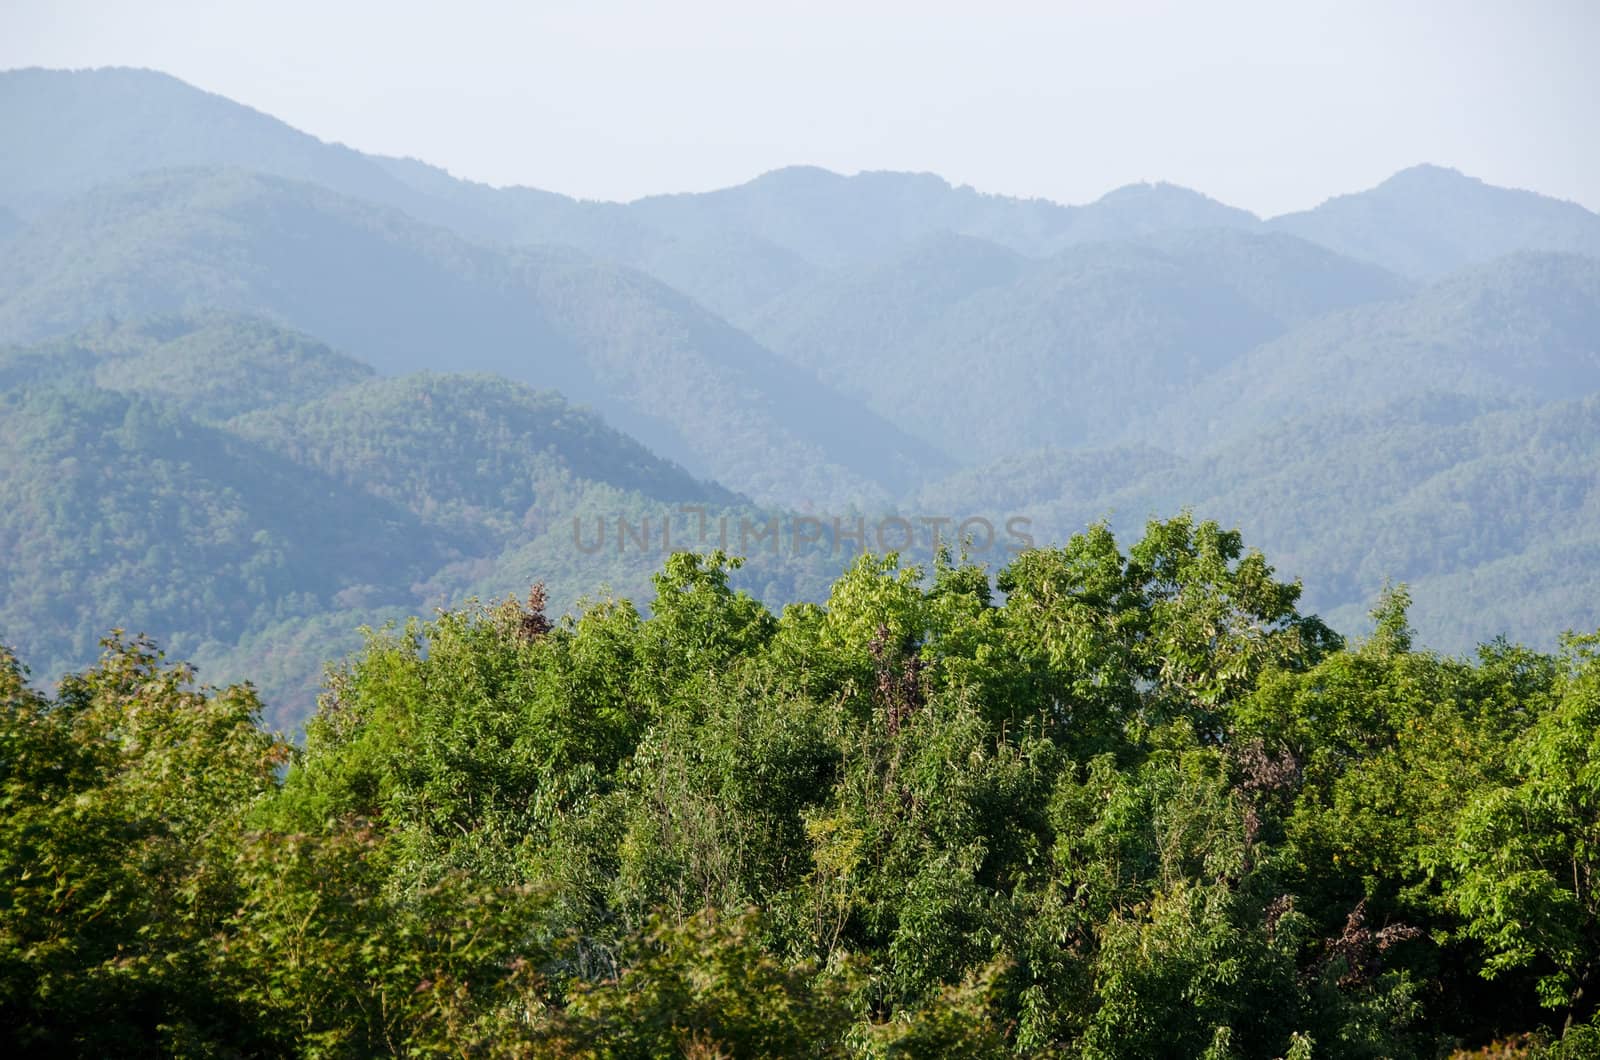 Mountain landscape around Arashiyama near Kyoto, Japan